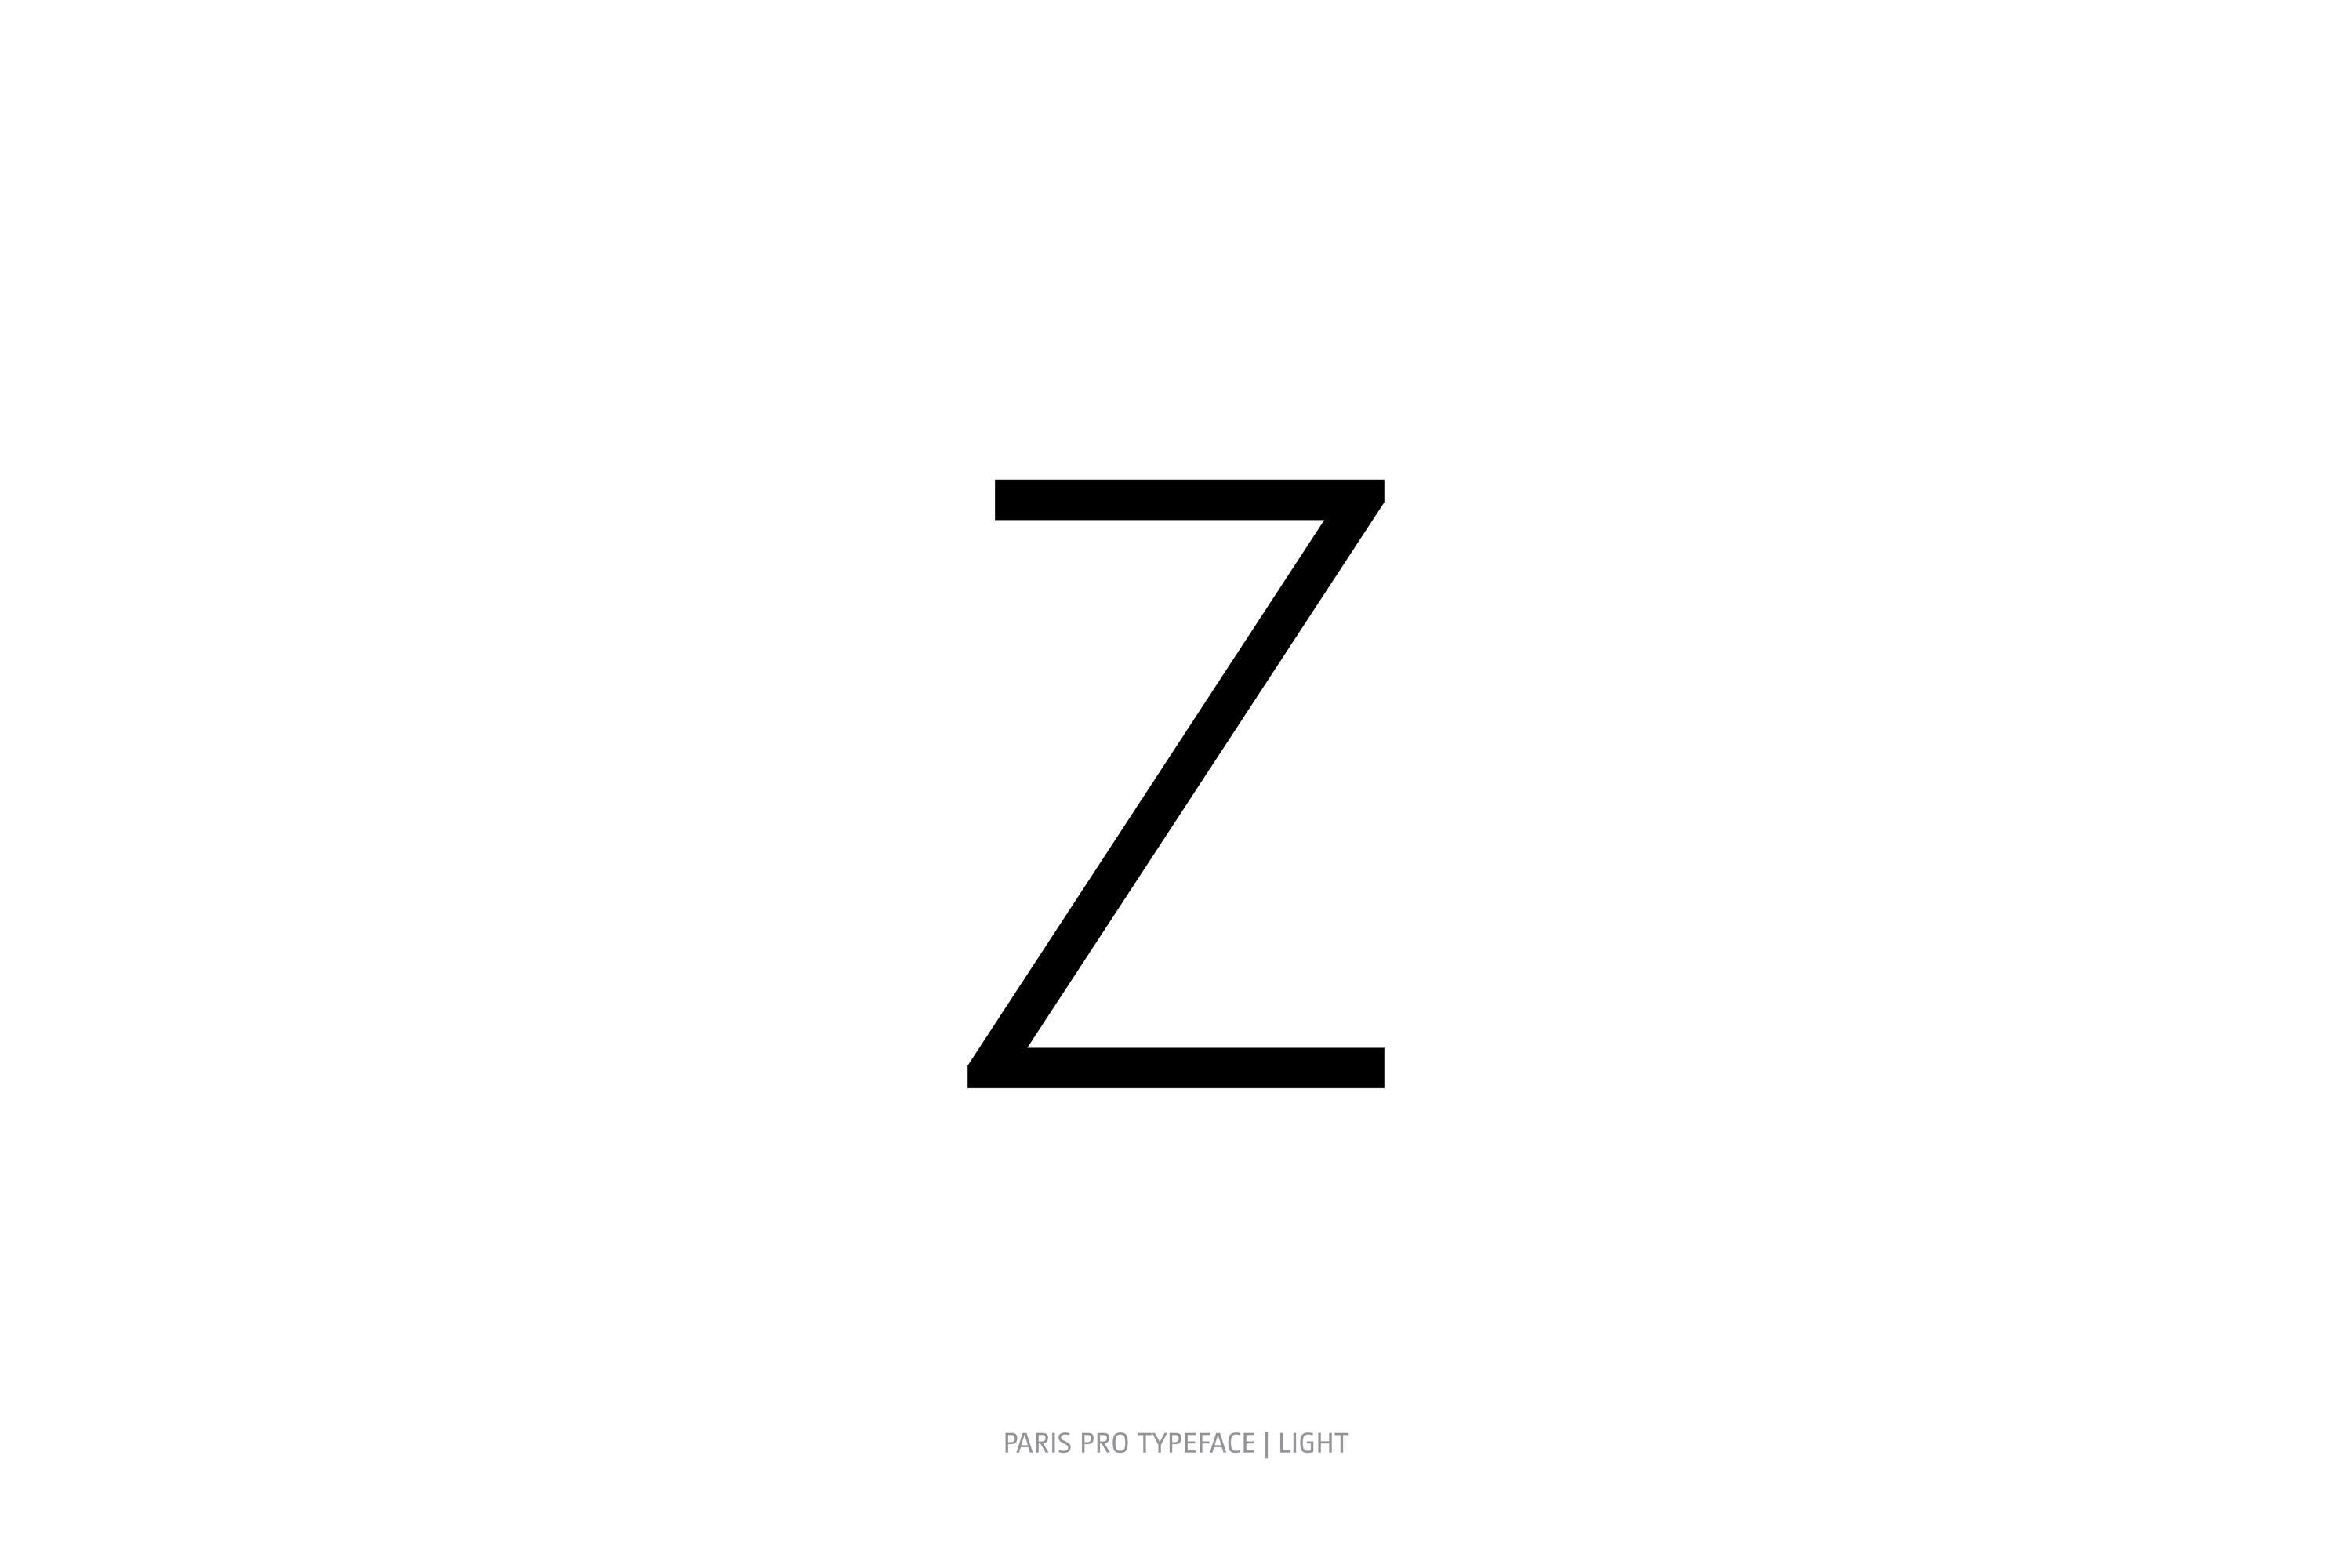 Paris Pro Typeface Light Style Z